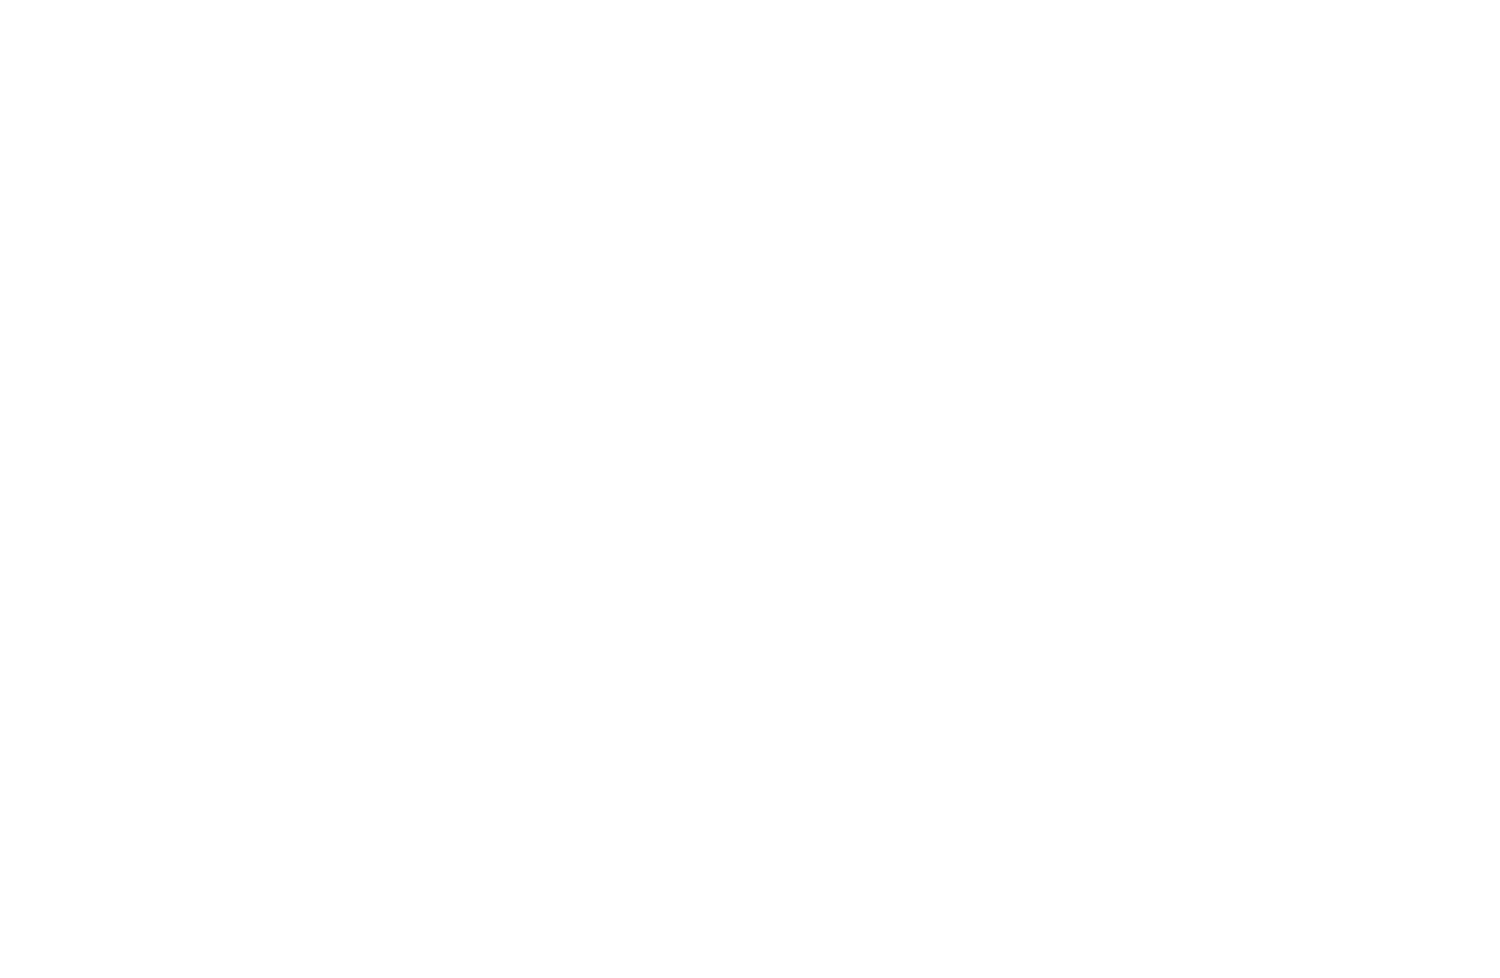 THE OAK VESSEL